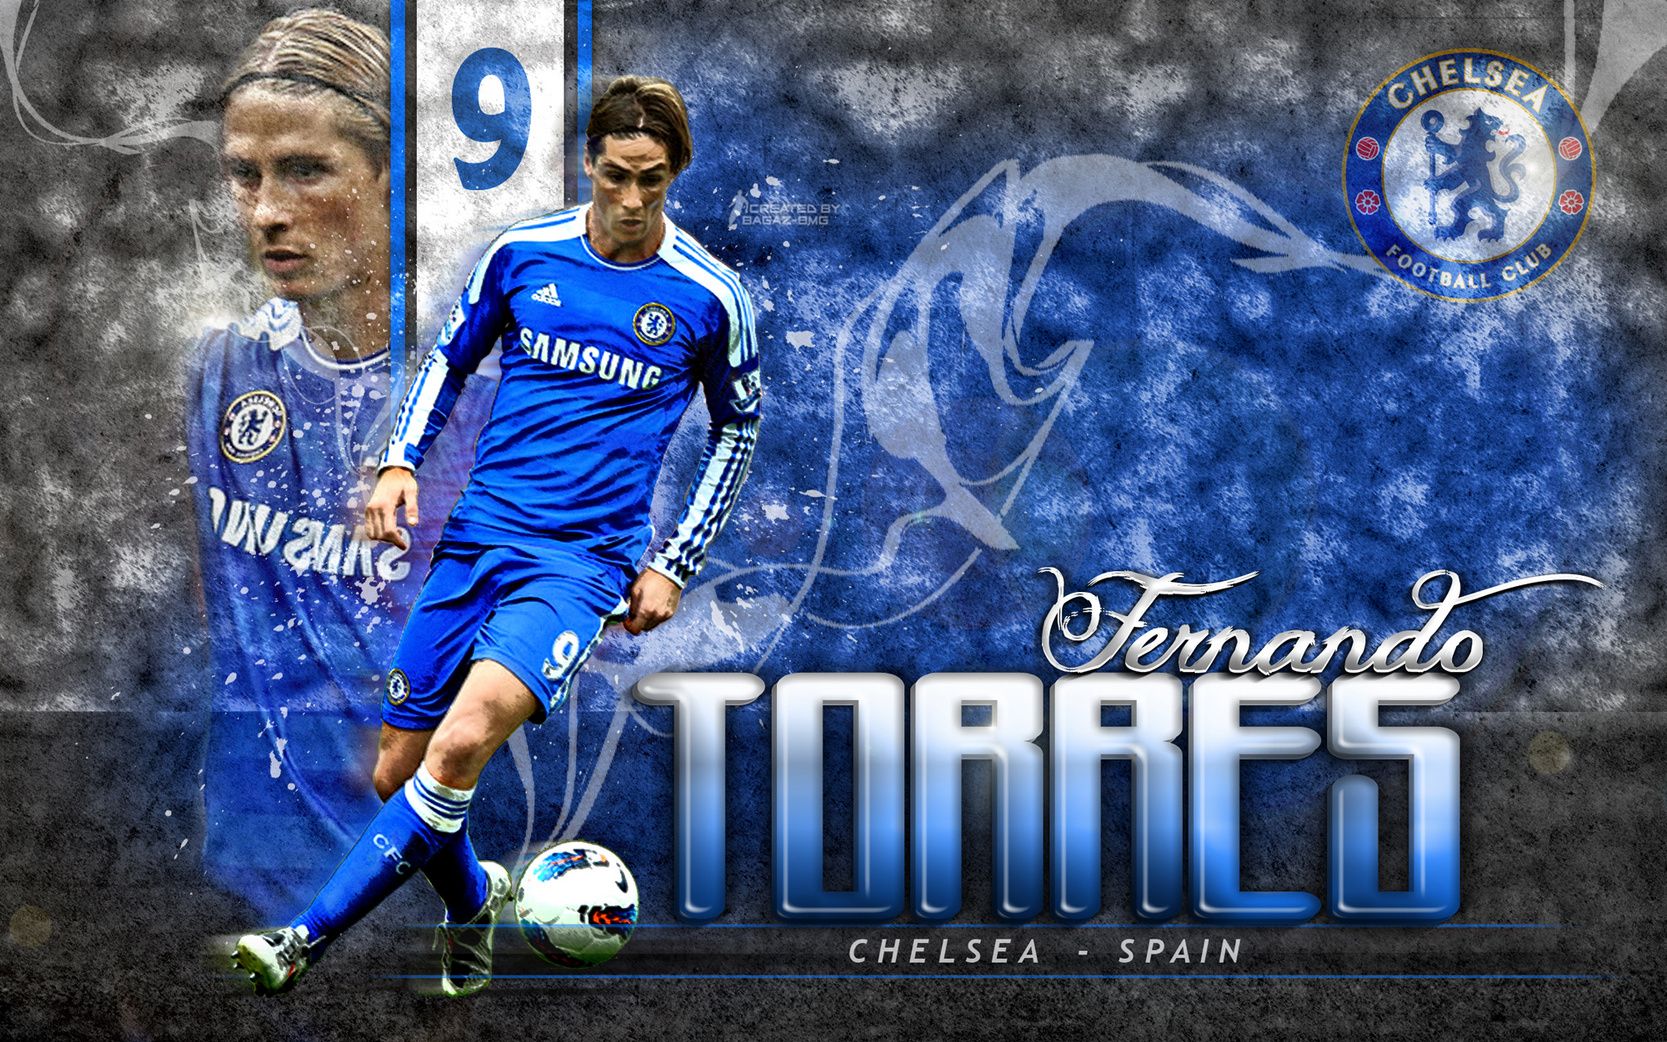 Fernando Torres Striker Wallpaper - Football HD Backgrounds